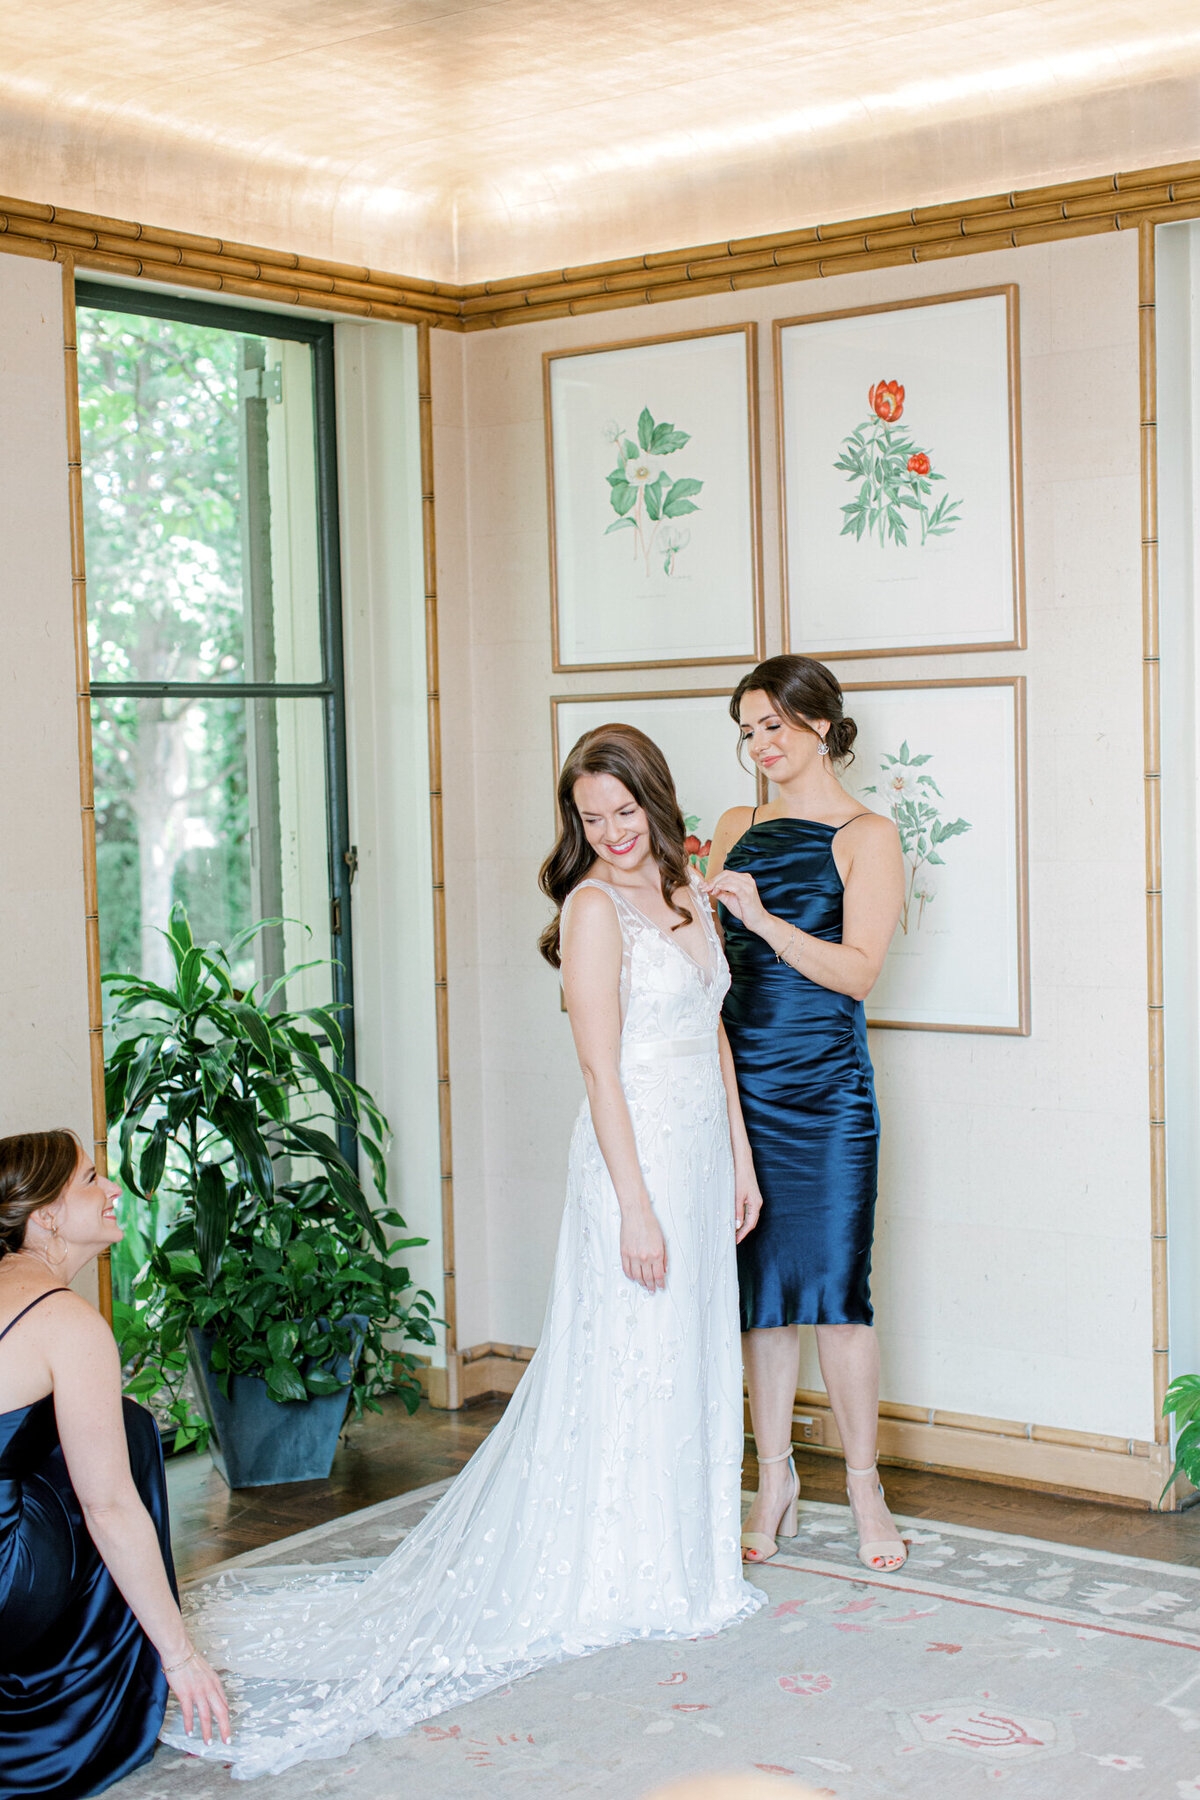 Gena & Matt's Wedding at the Dallas Arboretum | Dallas Wedding Photographer | Sami Kathryn Photography-44